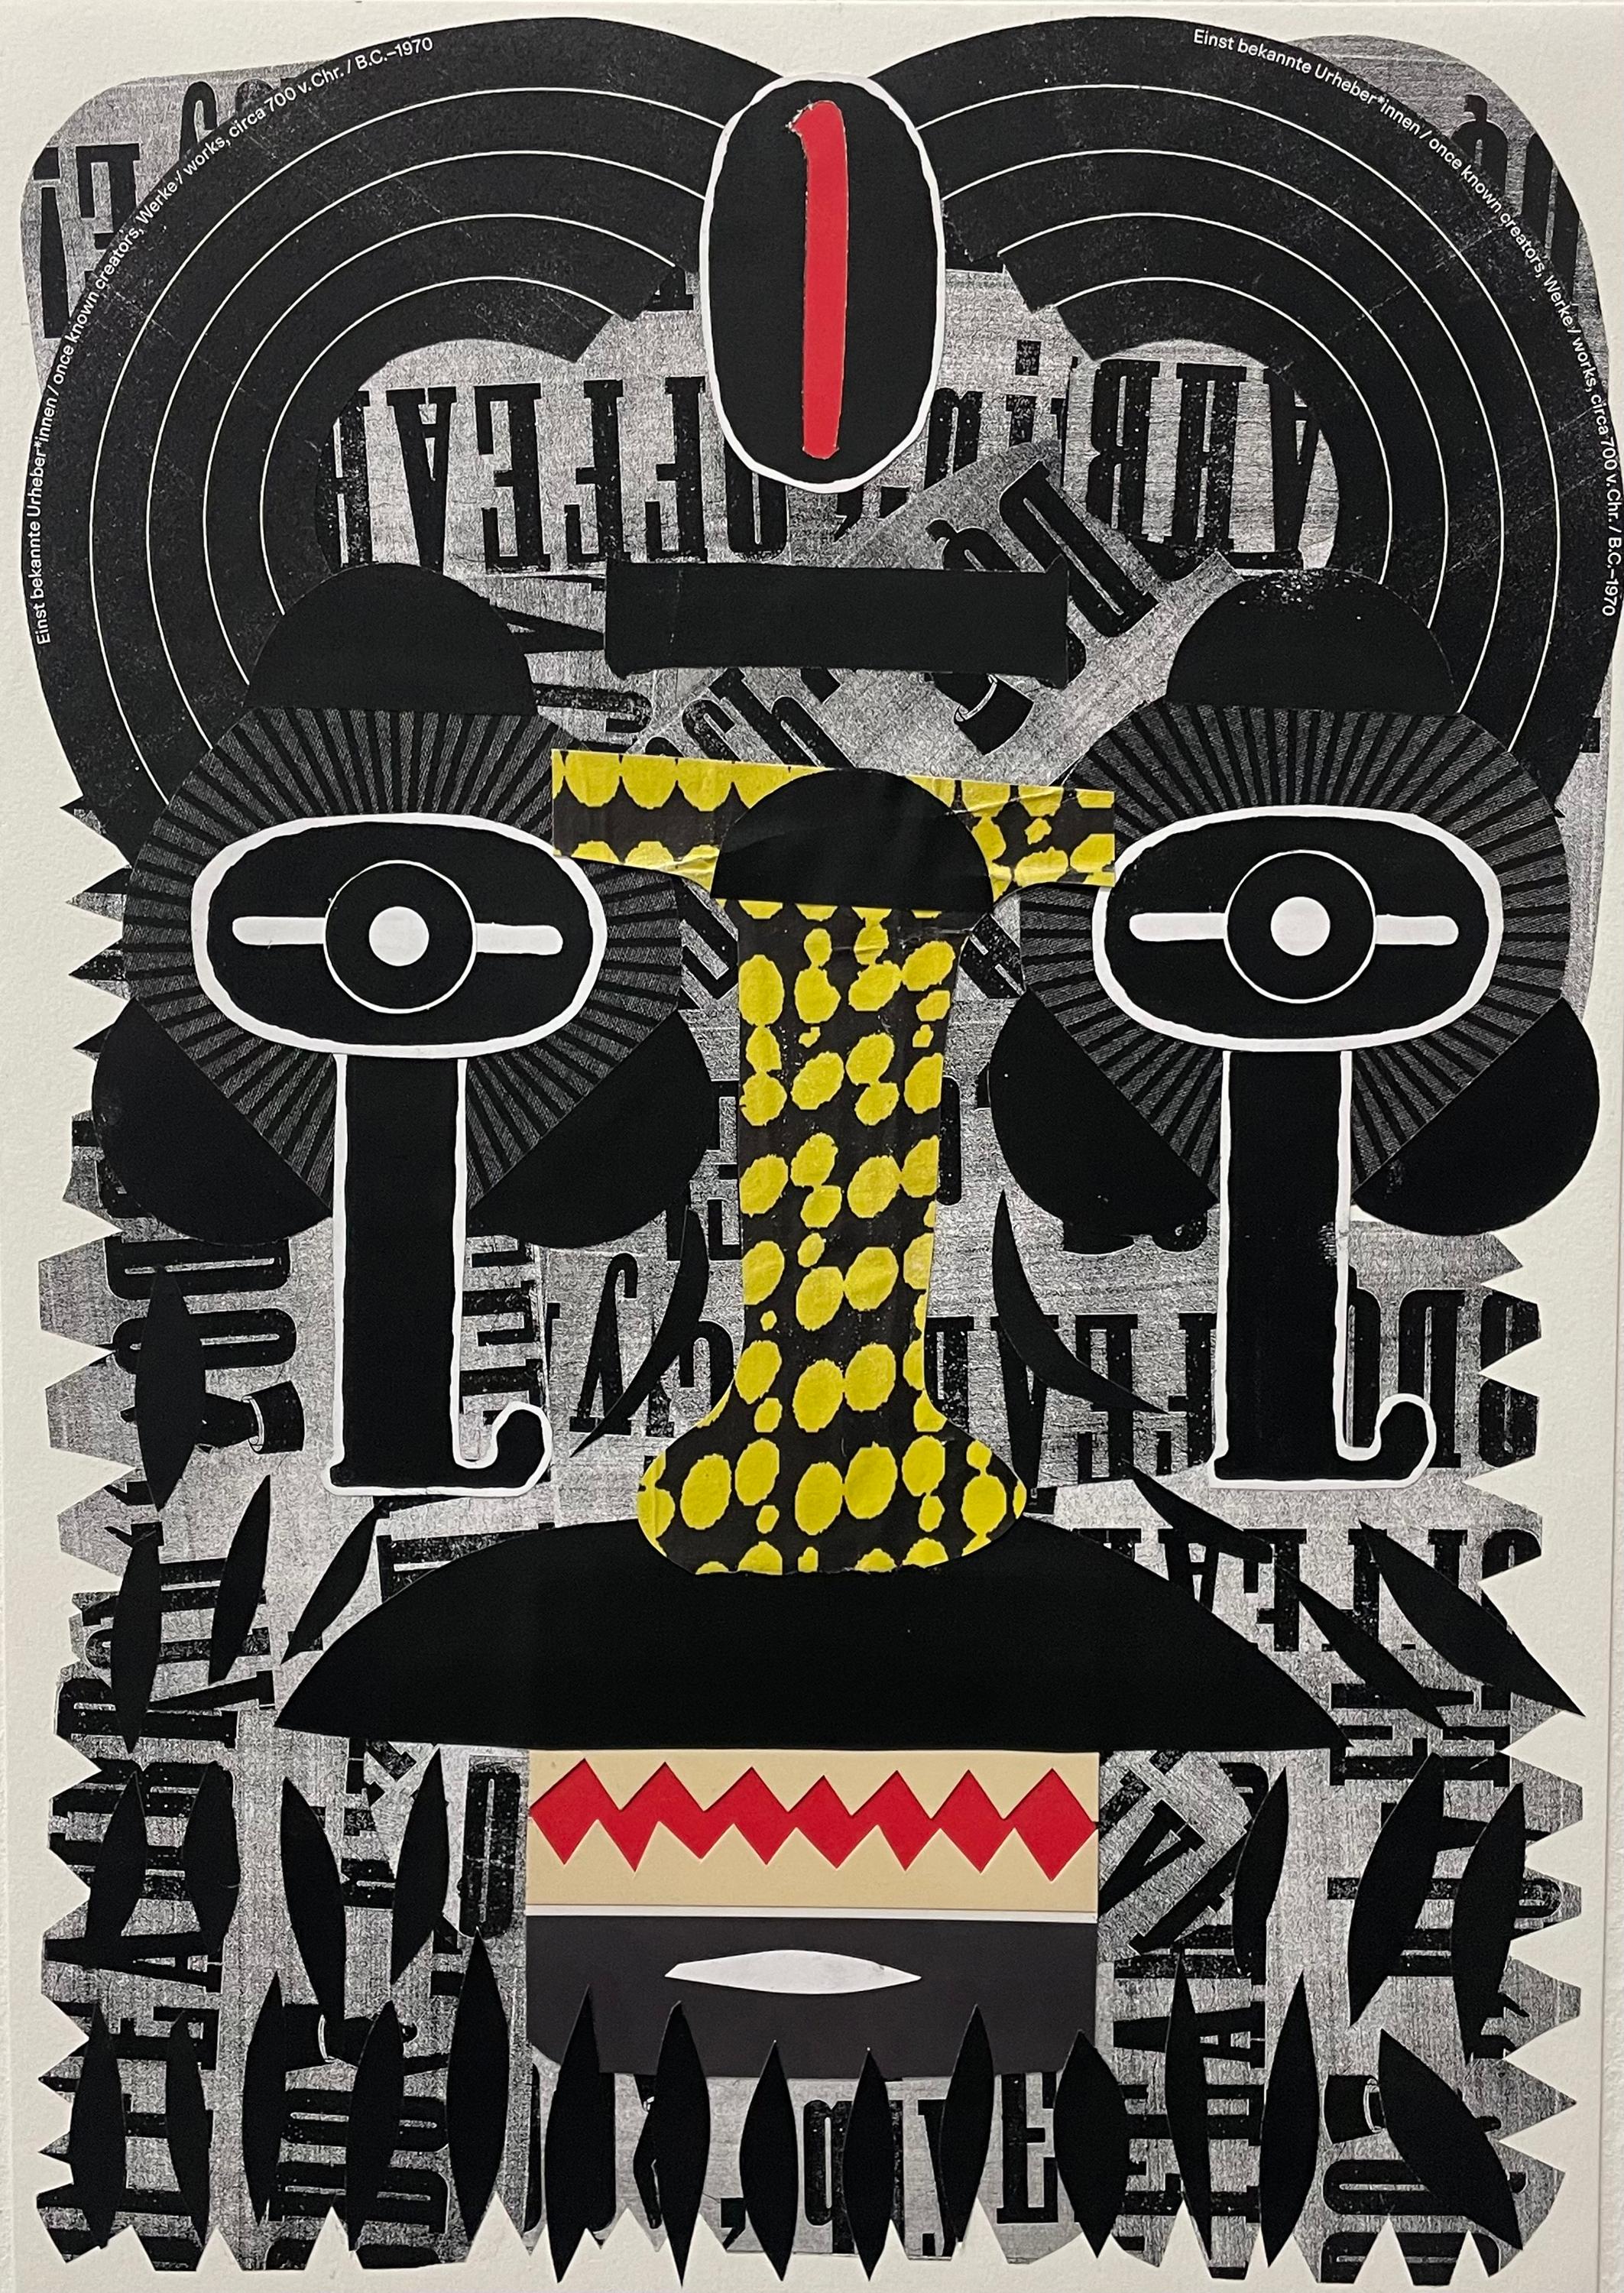 Uno" - Collage, abstraktes Porträt, gefundenes Papier, schwarz-weiß, Surrealismus – Mixed Media Art von Esteban Patino